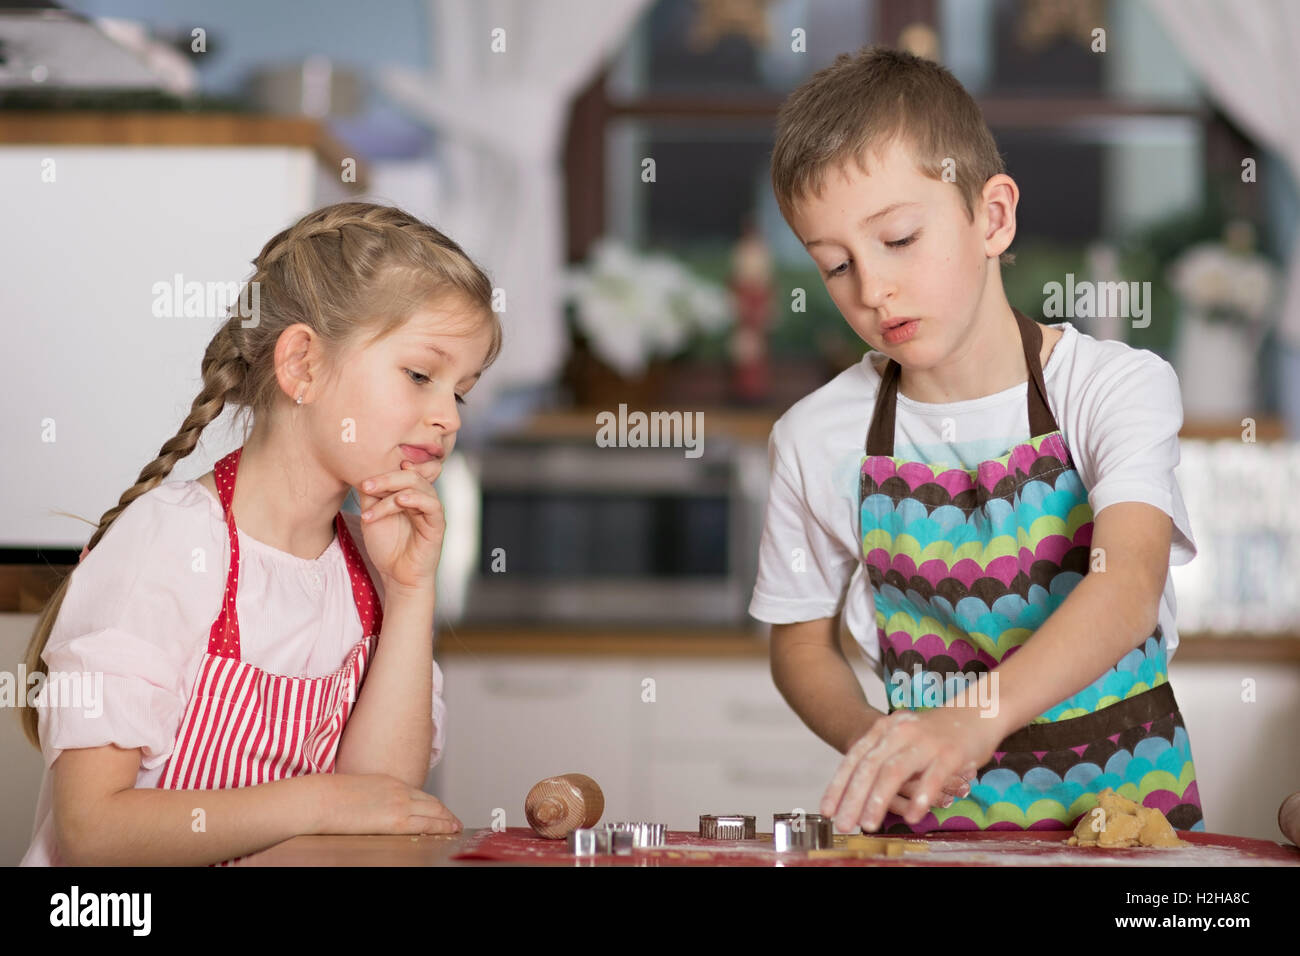 Mädchen junge Kekse Formen von einigen Gebäck in der Küche in ihrem Haus zu schneiden-Uhren Stockfoto